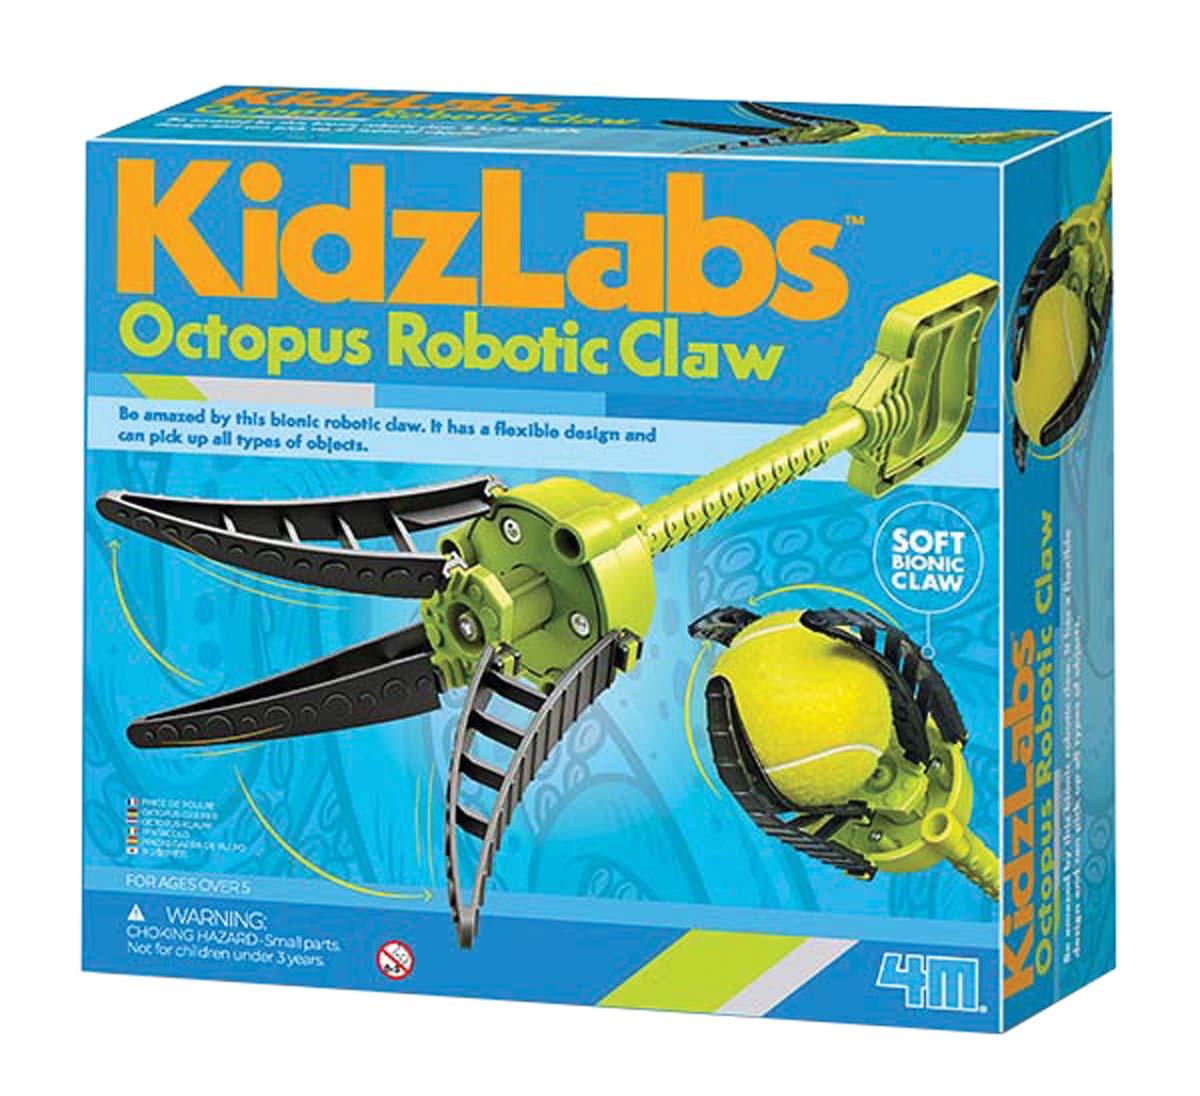 4M-Kidz Labs Octopus Robotic Claw